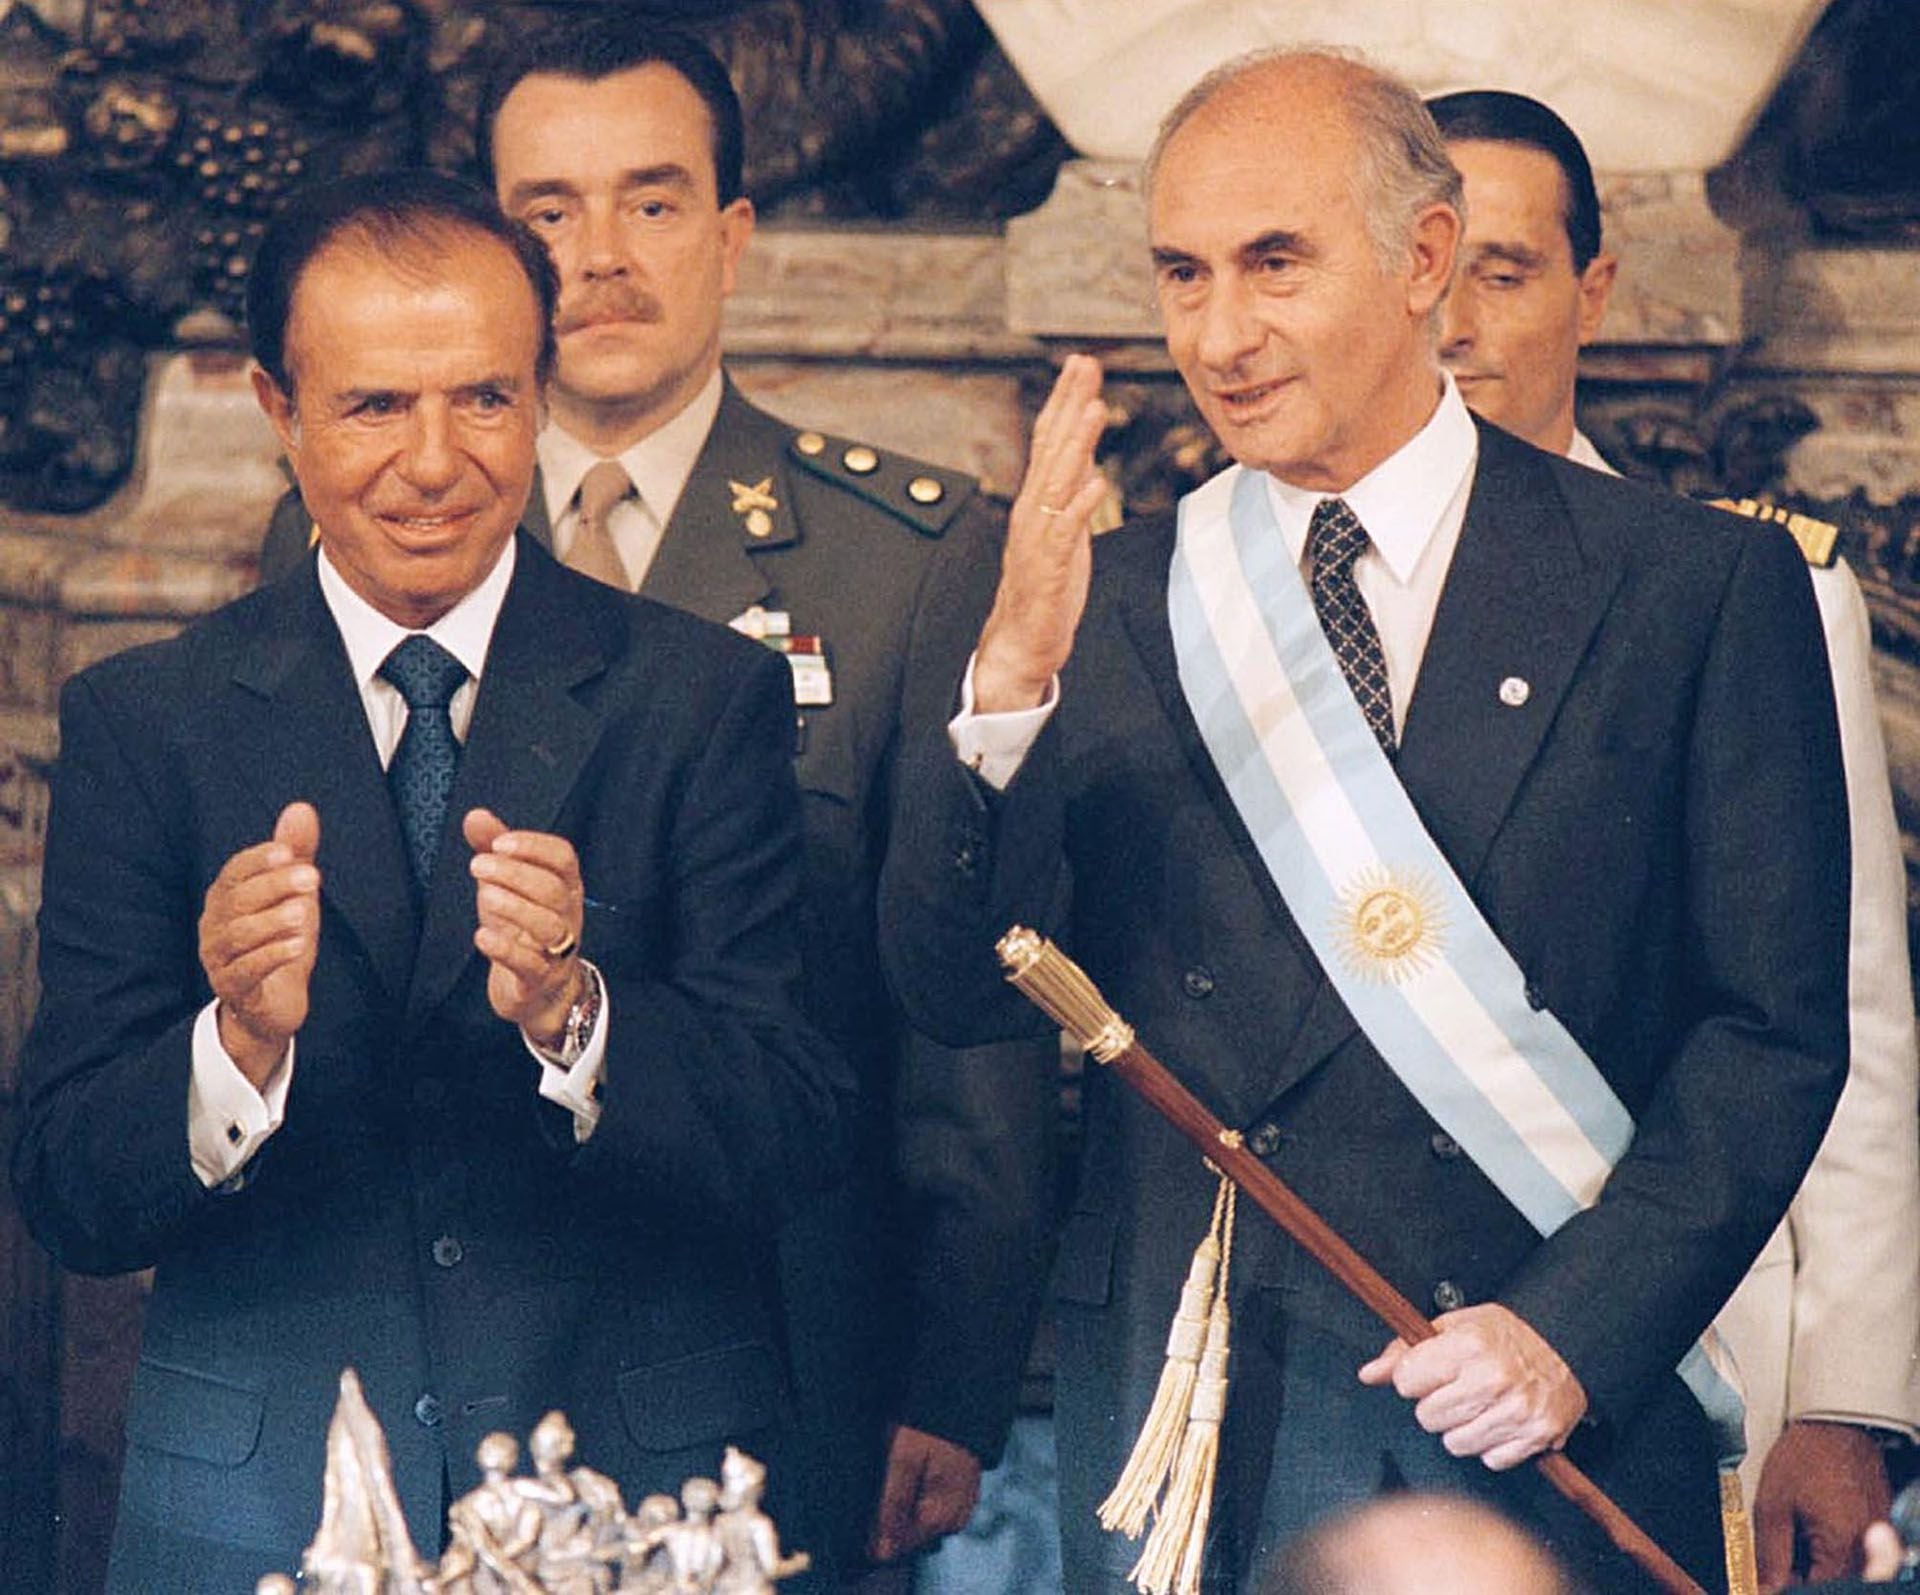 El 10 de diciembre de 1999, tras desistir de su rereelcción, Carlos Menem entregó los atributos al tercer presidente constitucional desde el regreso de la democracia en 1983, Fernando De la Rúa.  (Foto NA).